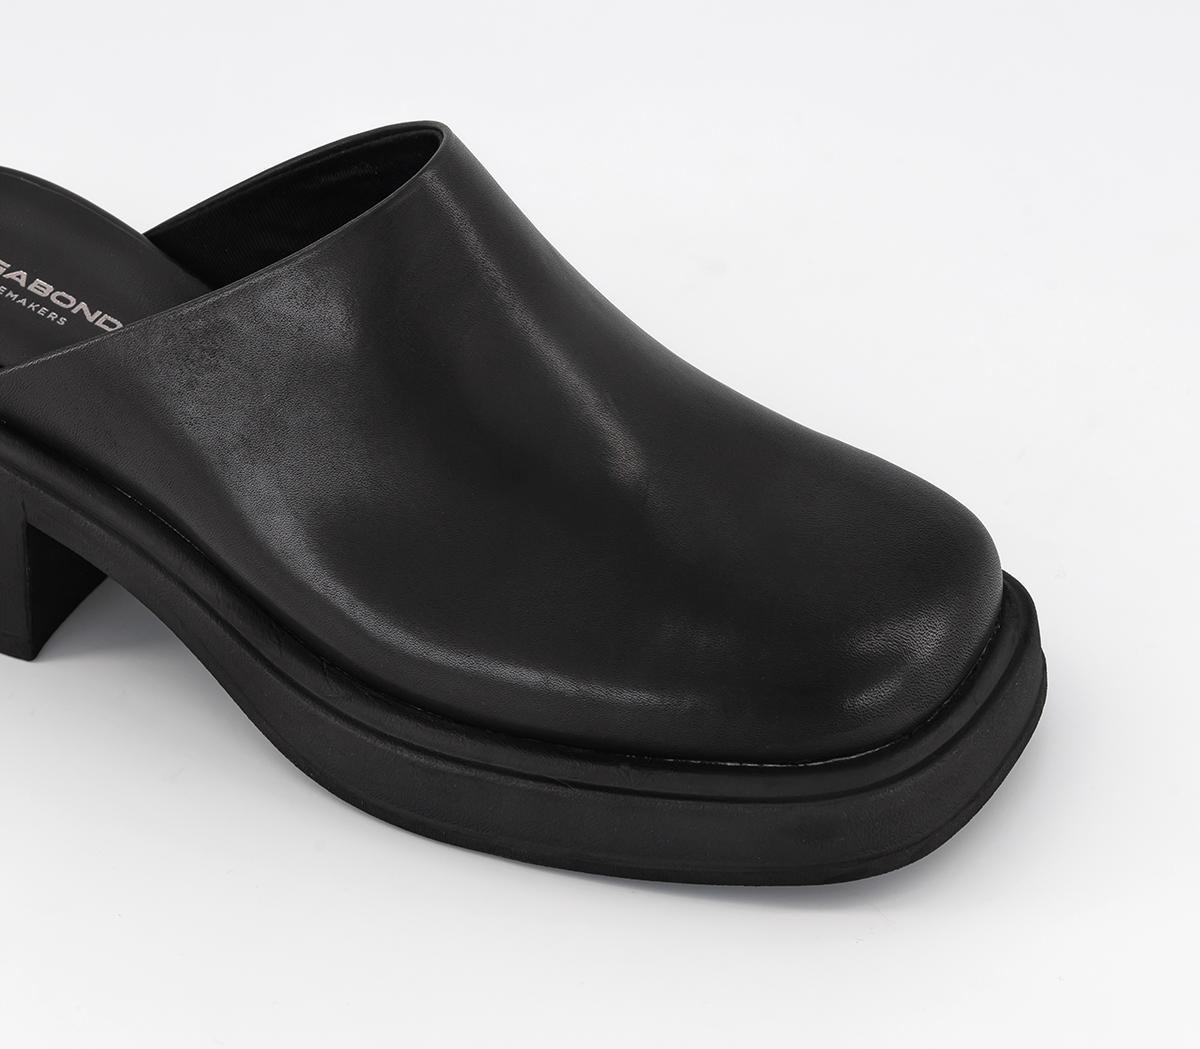 Vagabond Shoemakers Dorah Mules Black - Women's Clogs